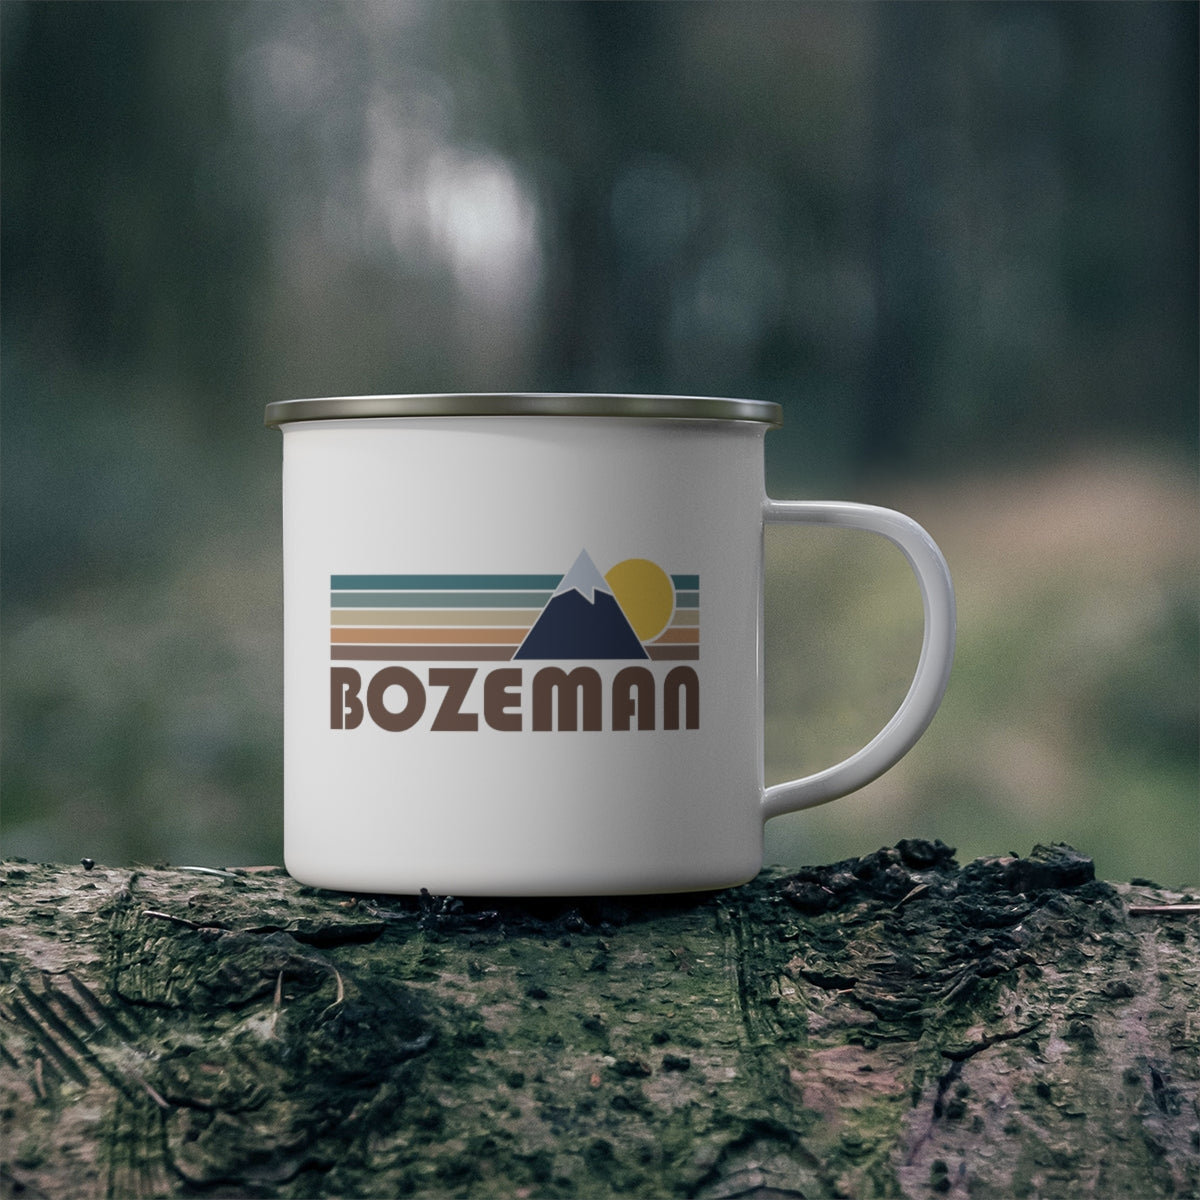 Bozeman, Montana Camp Mug - Retro Enamel Camping Bozeman Mug